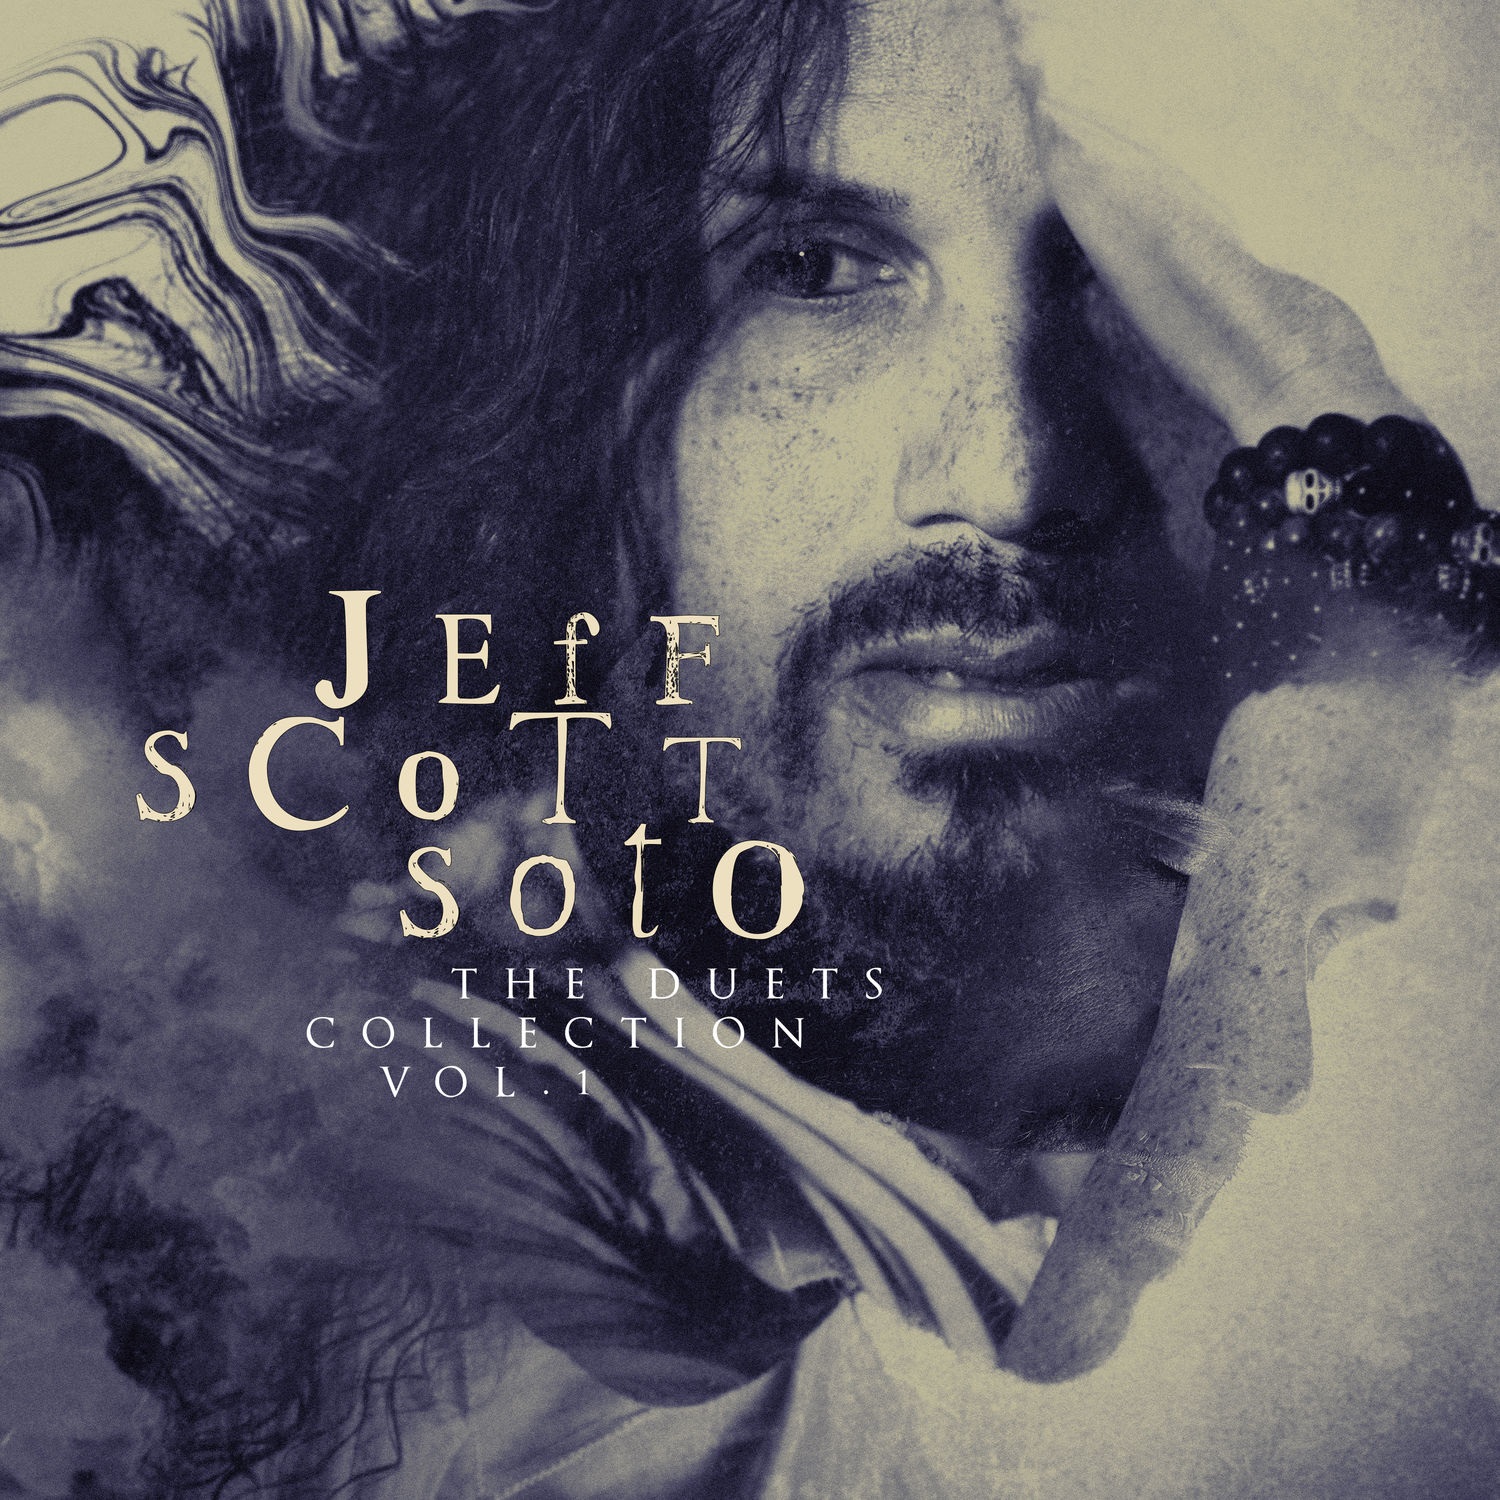 Jeff Scott Soto - The Duets Collection, Vol. 1 (2021) [FLAC 24bit/44,1kHz]